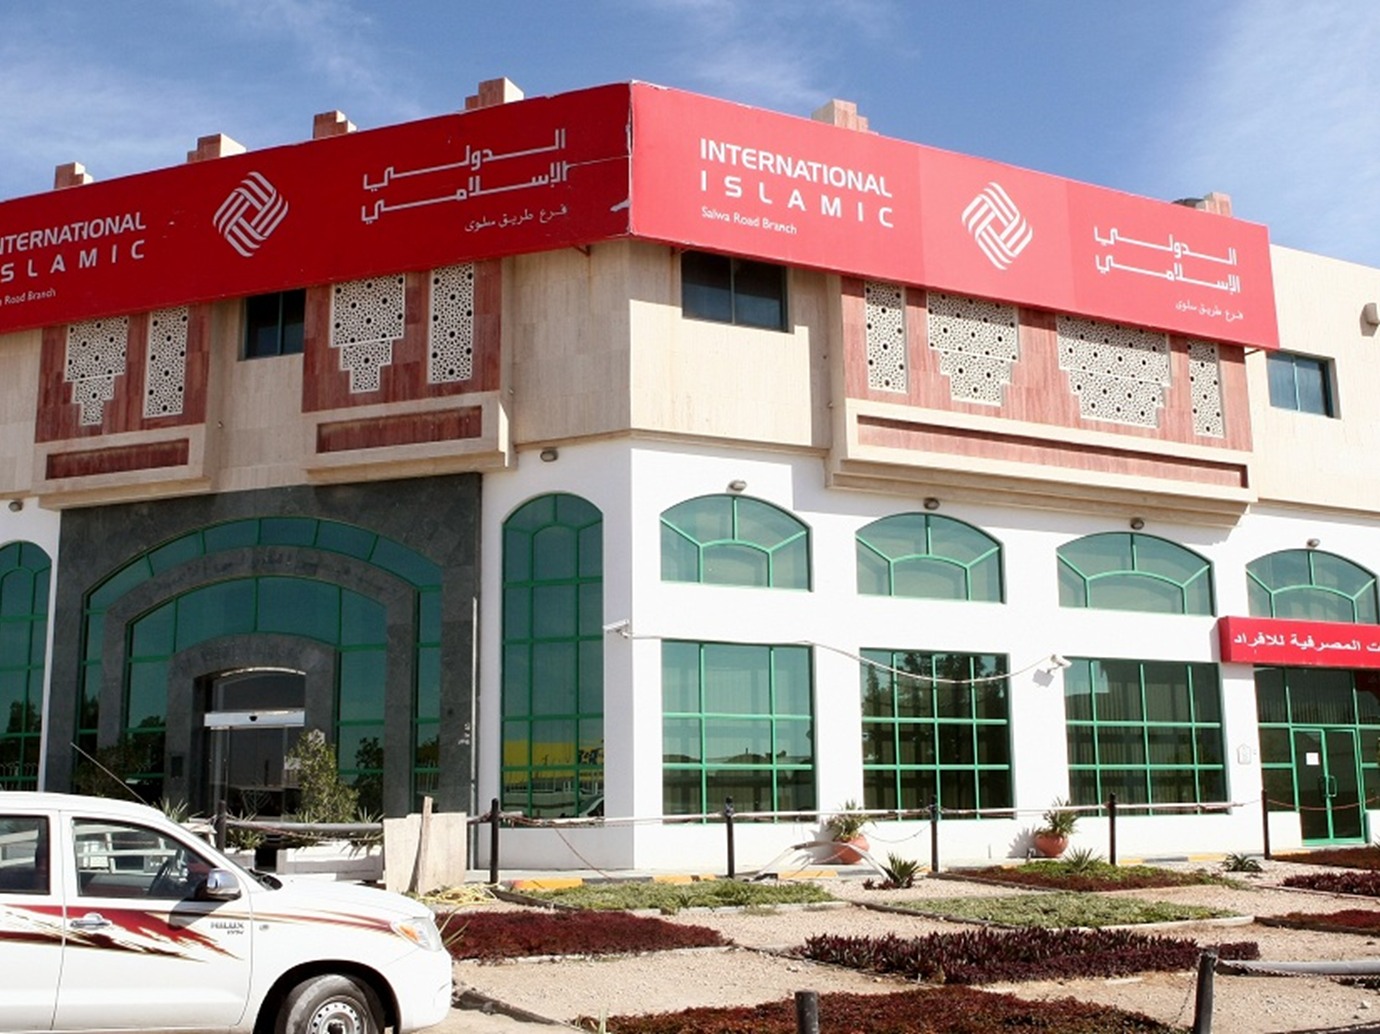 قطر: البنك الدولي الإسلامي يرفع نسبة تملك الأجانب إلى 100%